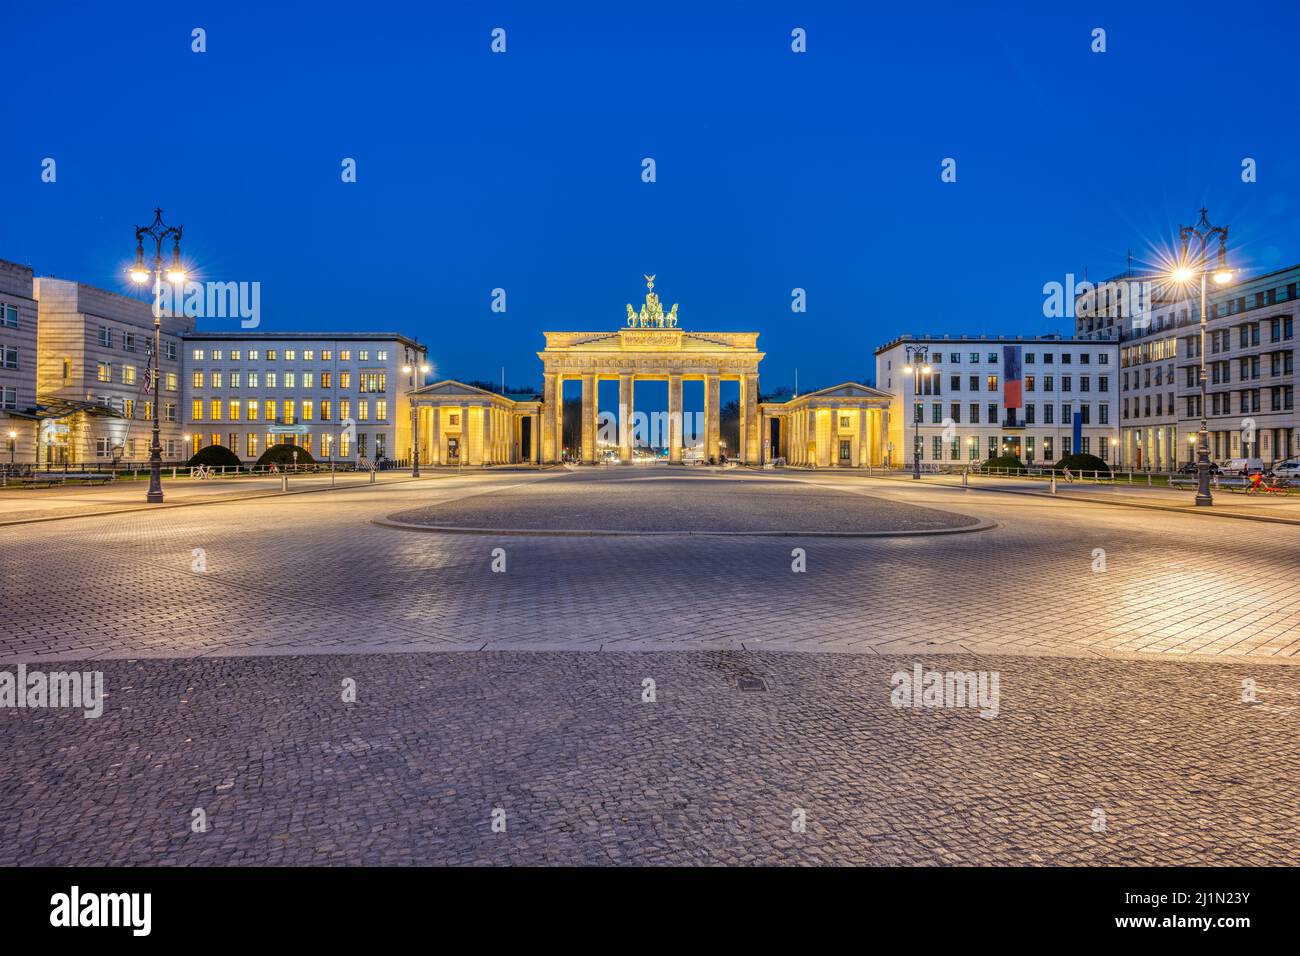 Der Pariser Platz in Berlin mit dem berühmten Brandenburger Tor in der Dämmerung Stockfoto